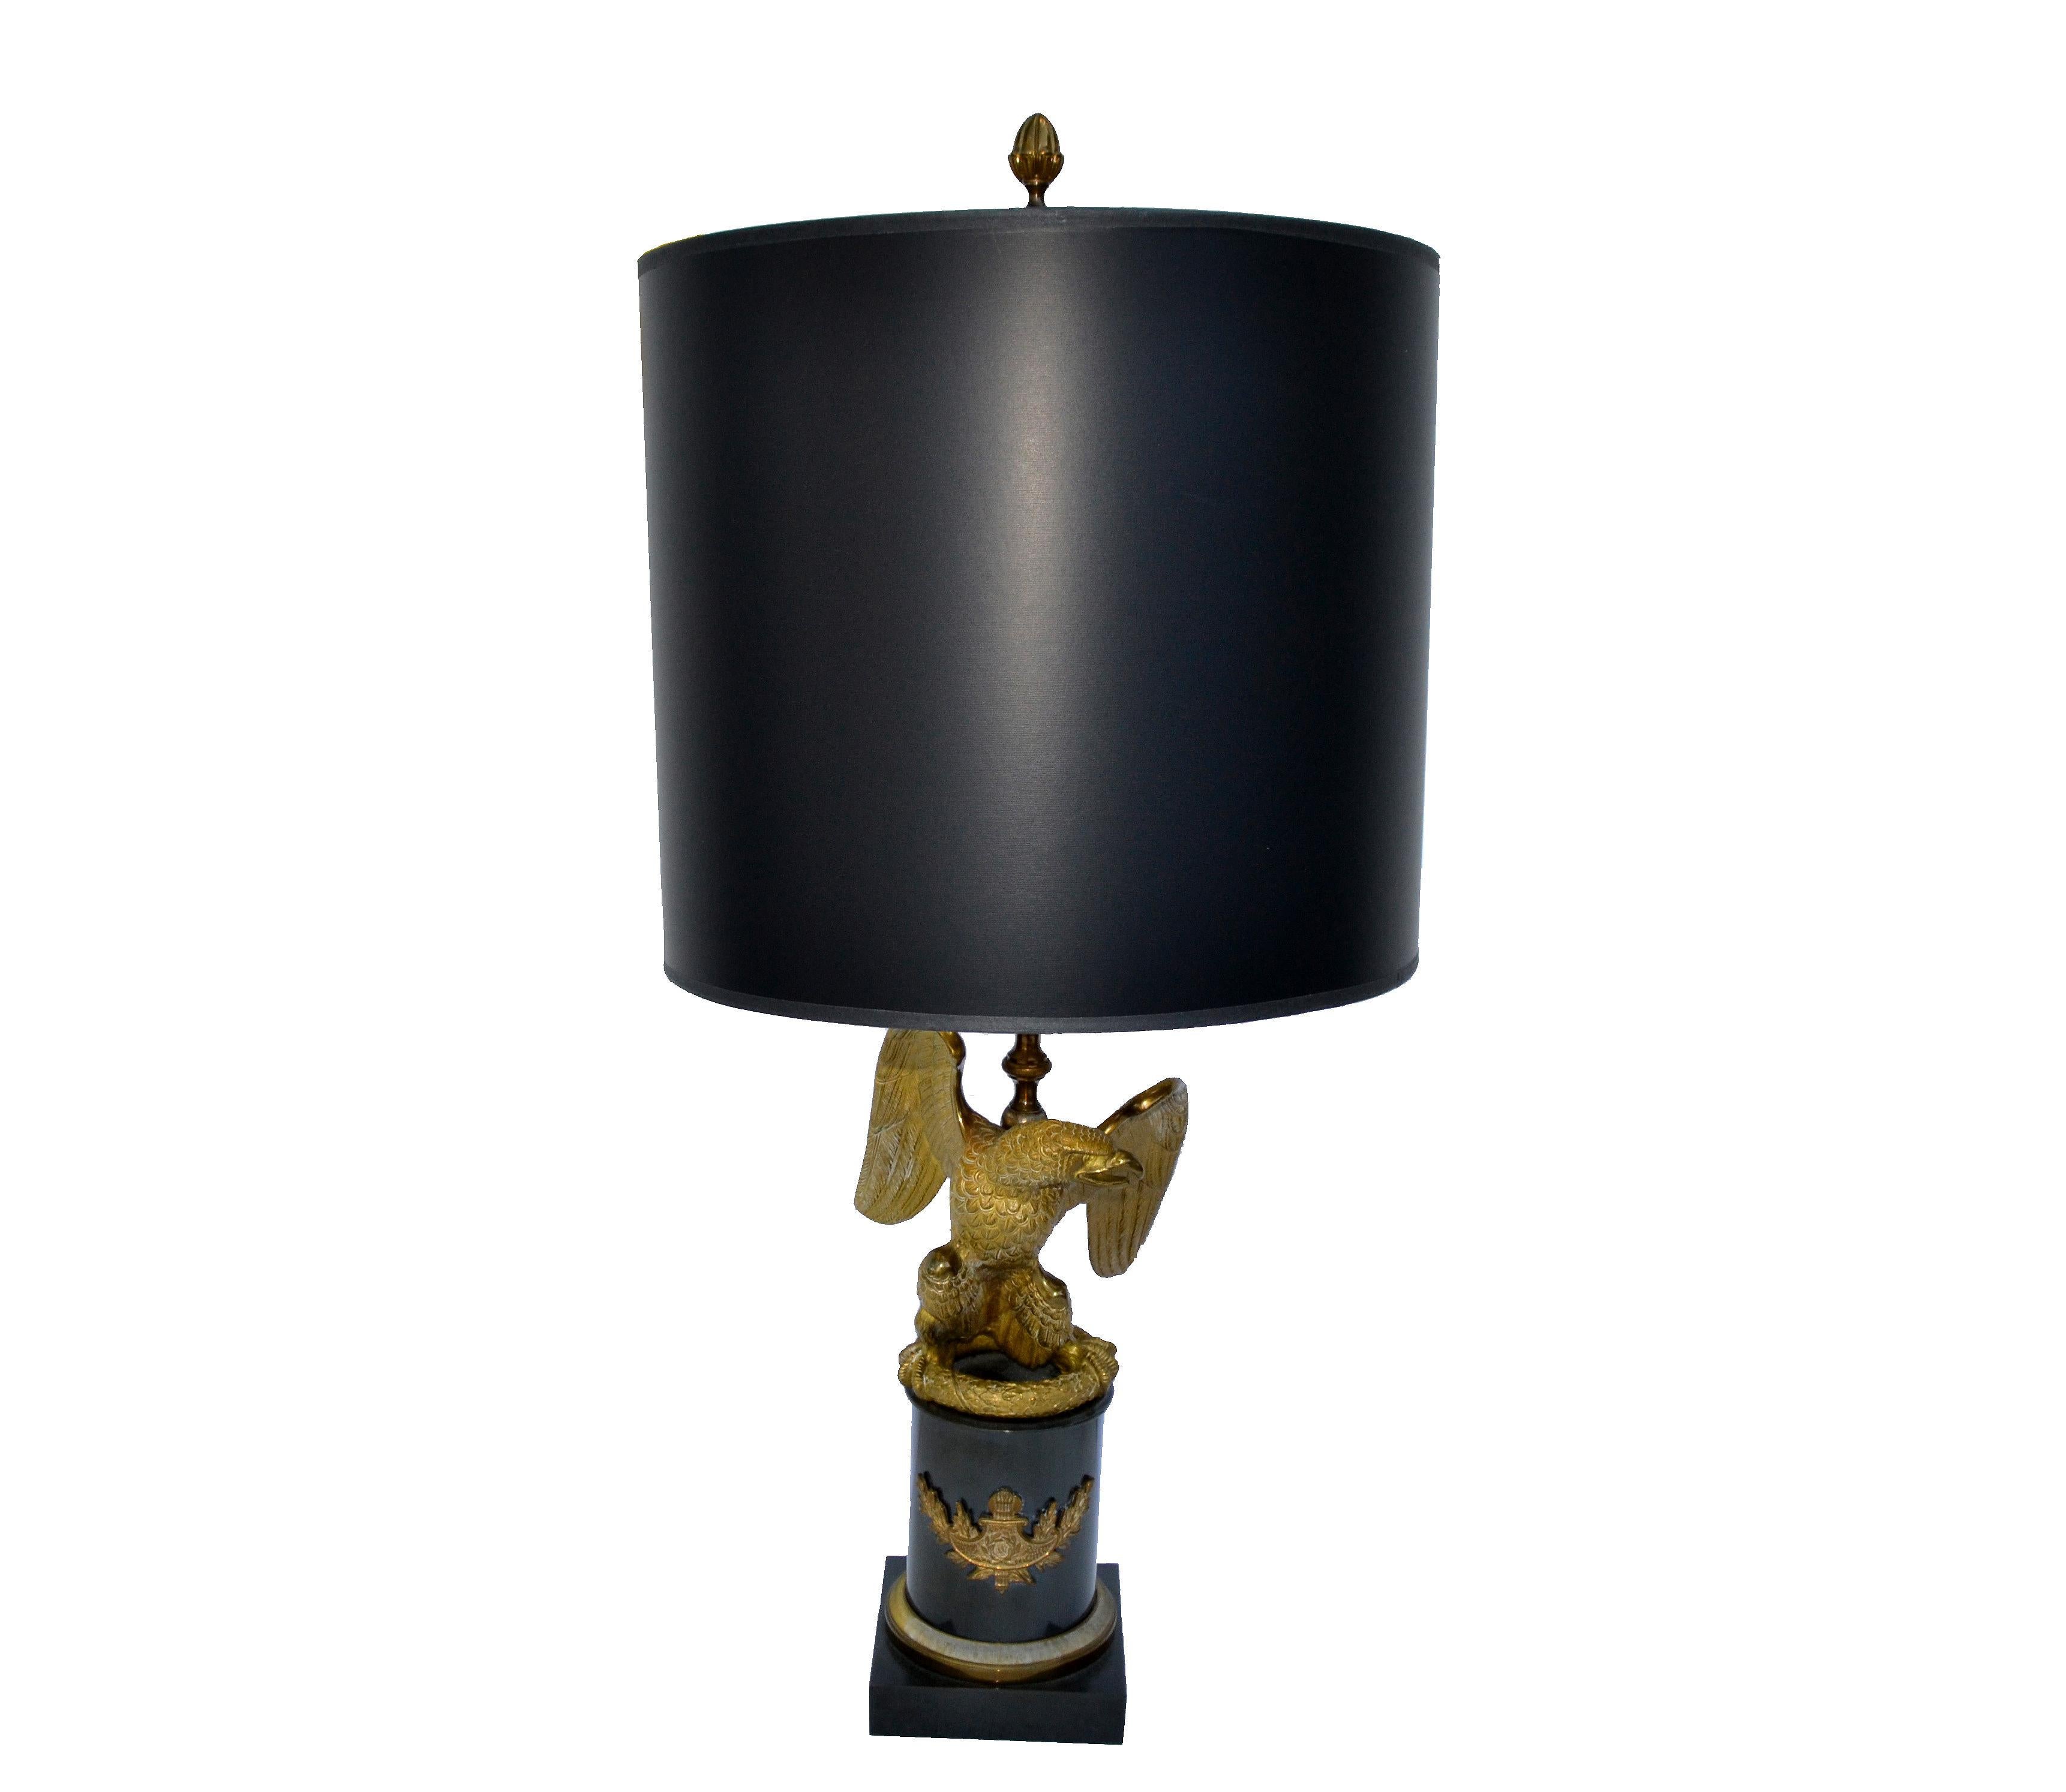 Superbe lampe de table Maison Charles, aigle en bronze martelé à la main comme un trophée monté sur un piédestal en marbre noir.
US recâblé et en état de marche. Il faut trois ampoules ordinaires ou LED de 40 watts chacune. 
Signé sur l'abat-jour